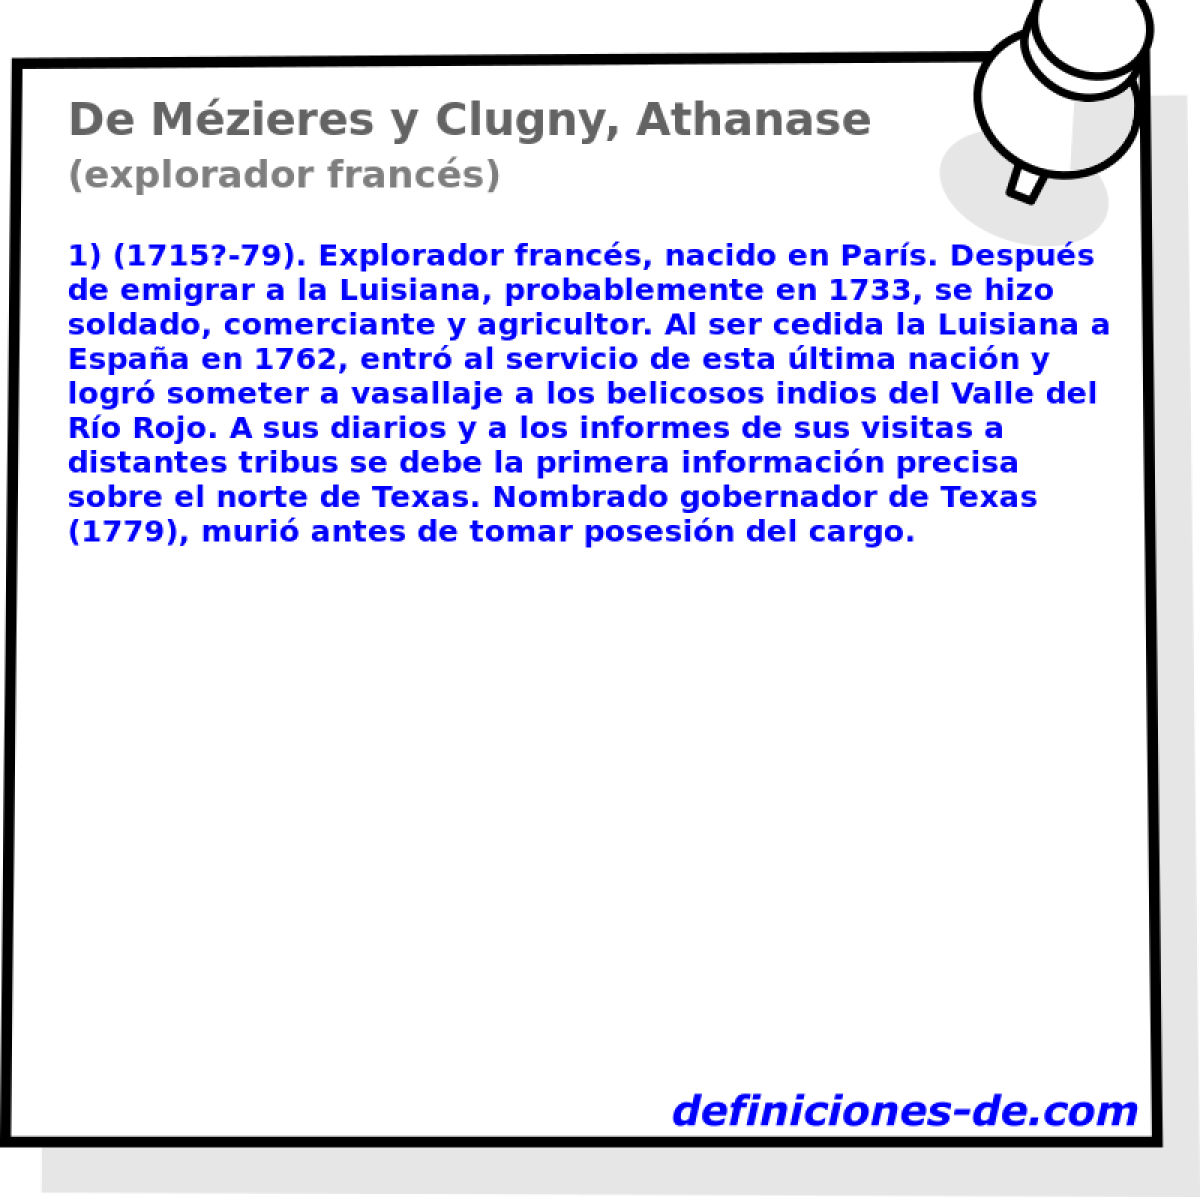 De Mzieres y Clugny, Athanase (explorador francs)